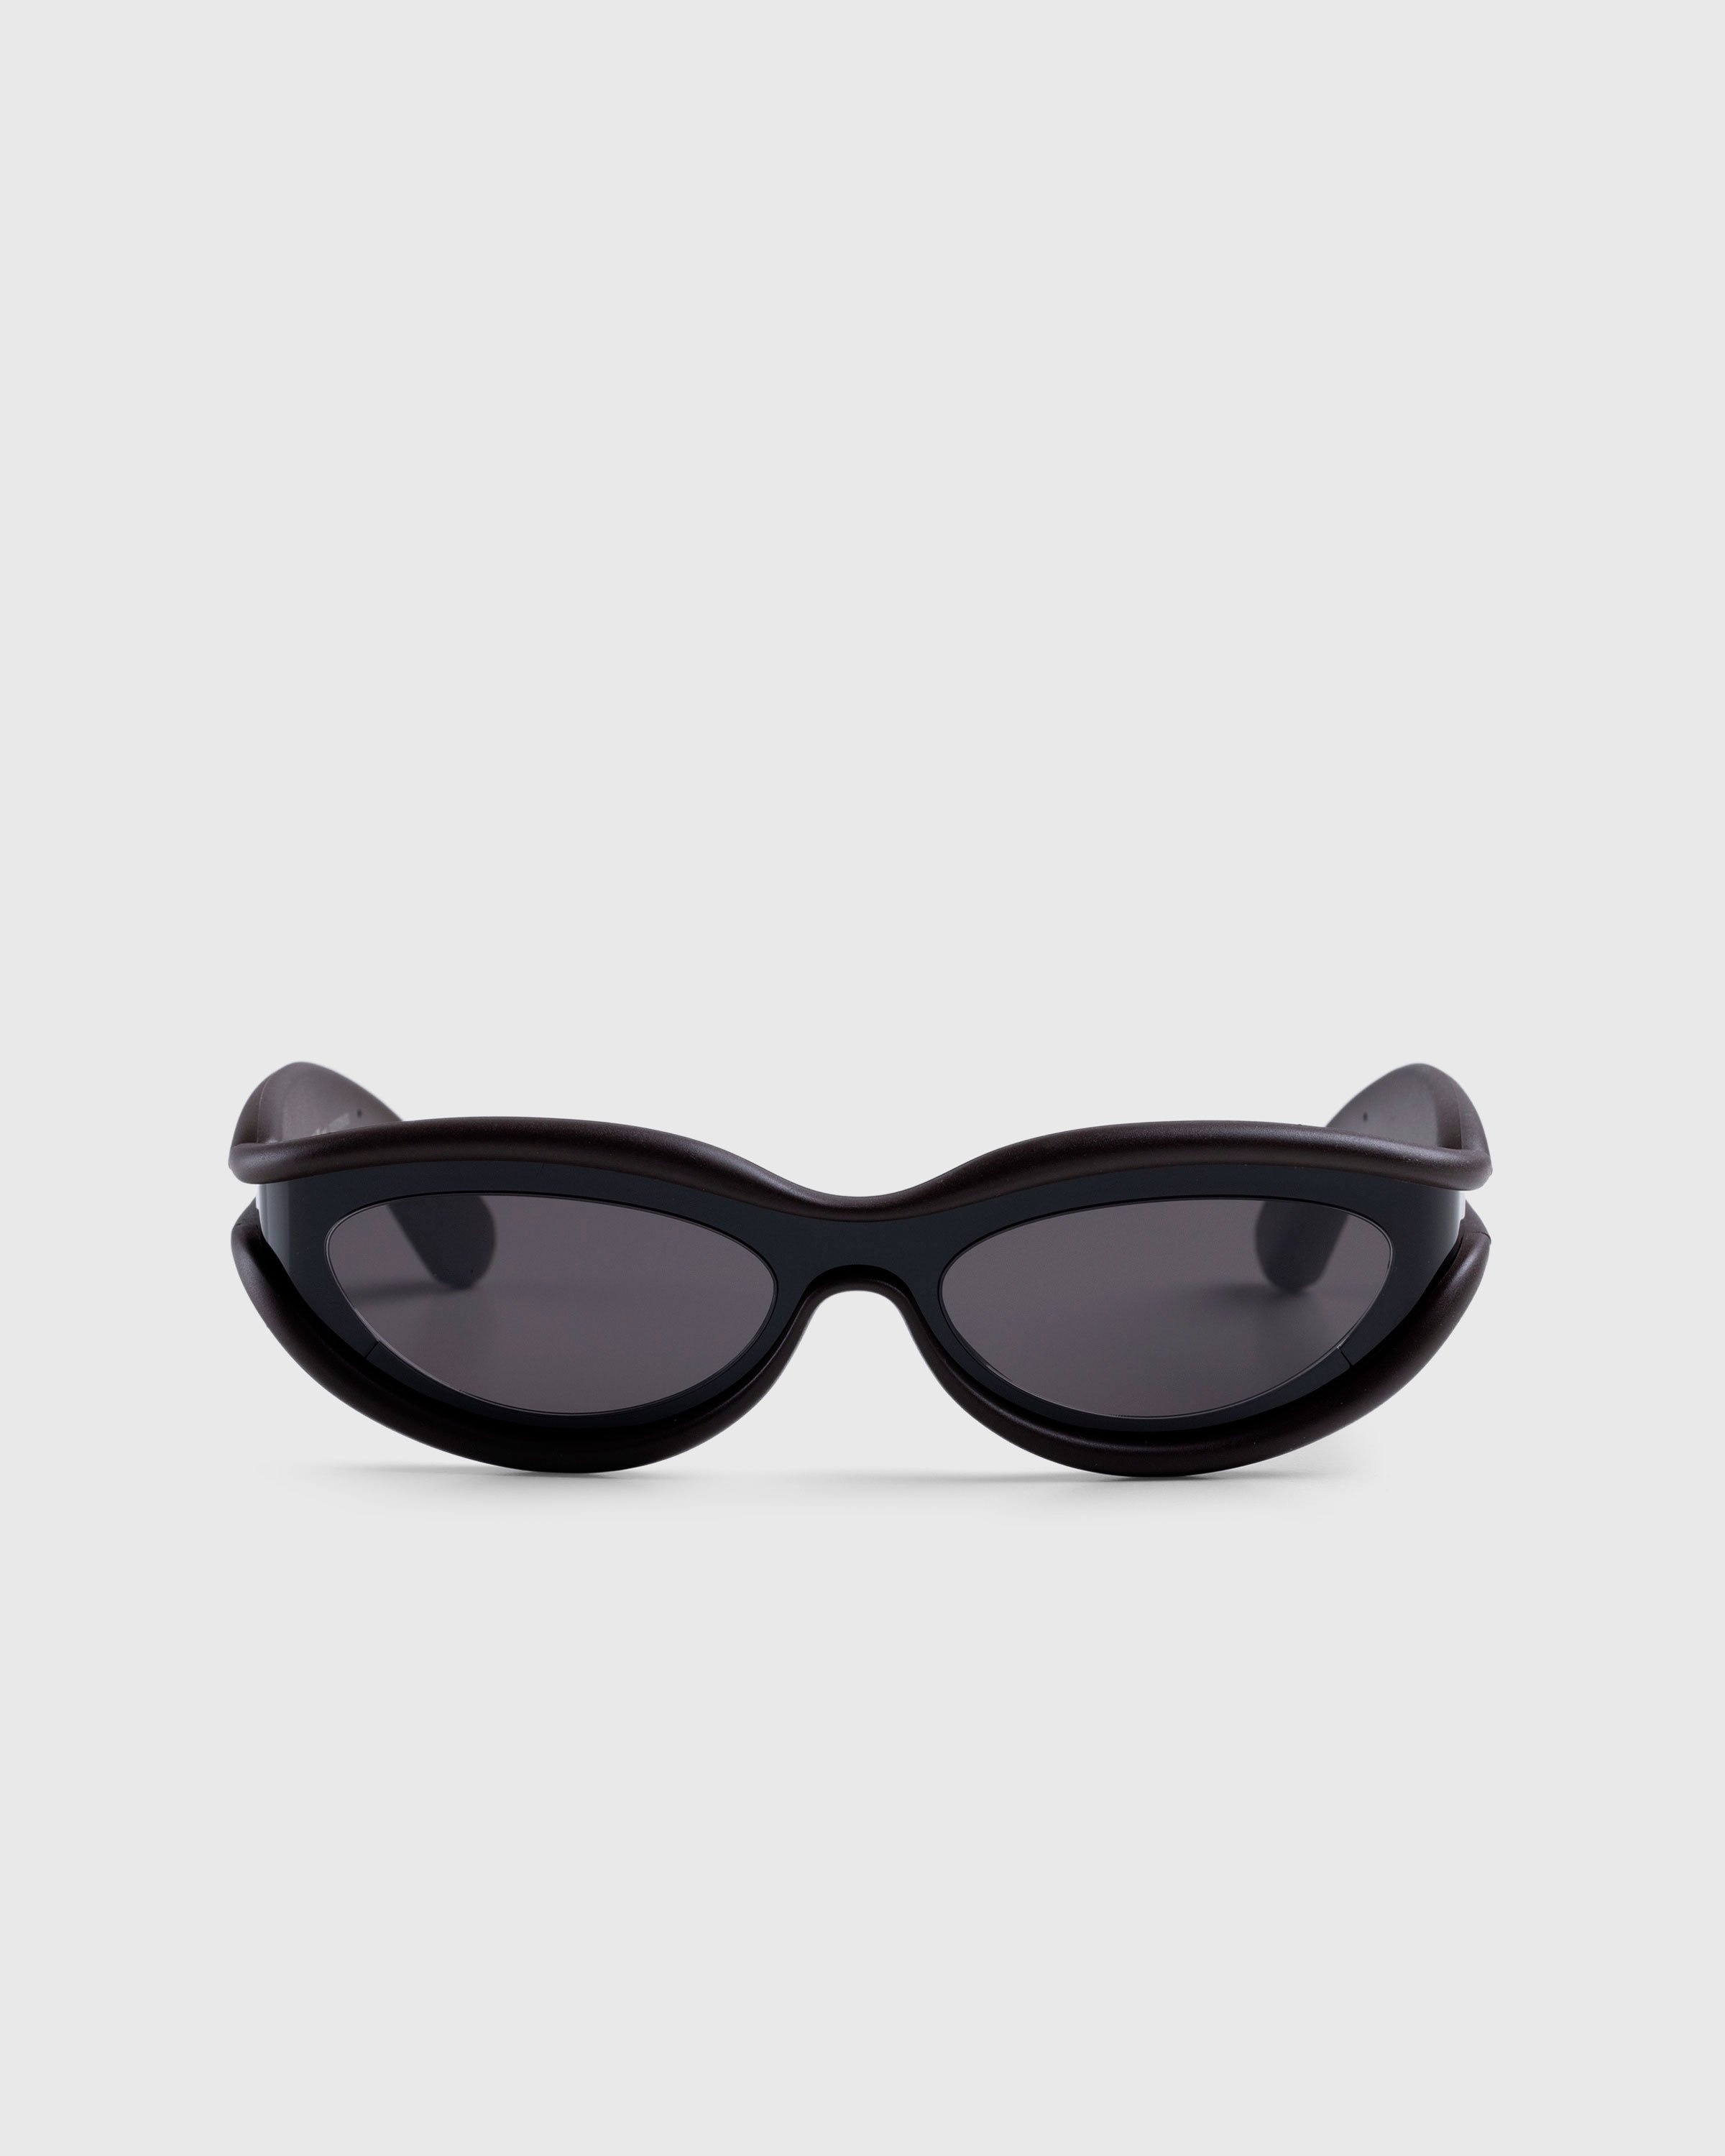 Bottega Veneta – Unapologetic Sunglasses Black - Eyewear - Black - Image 1